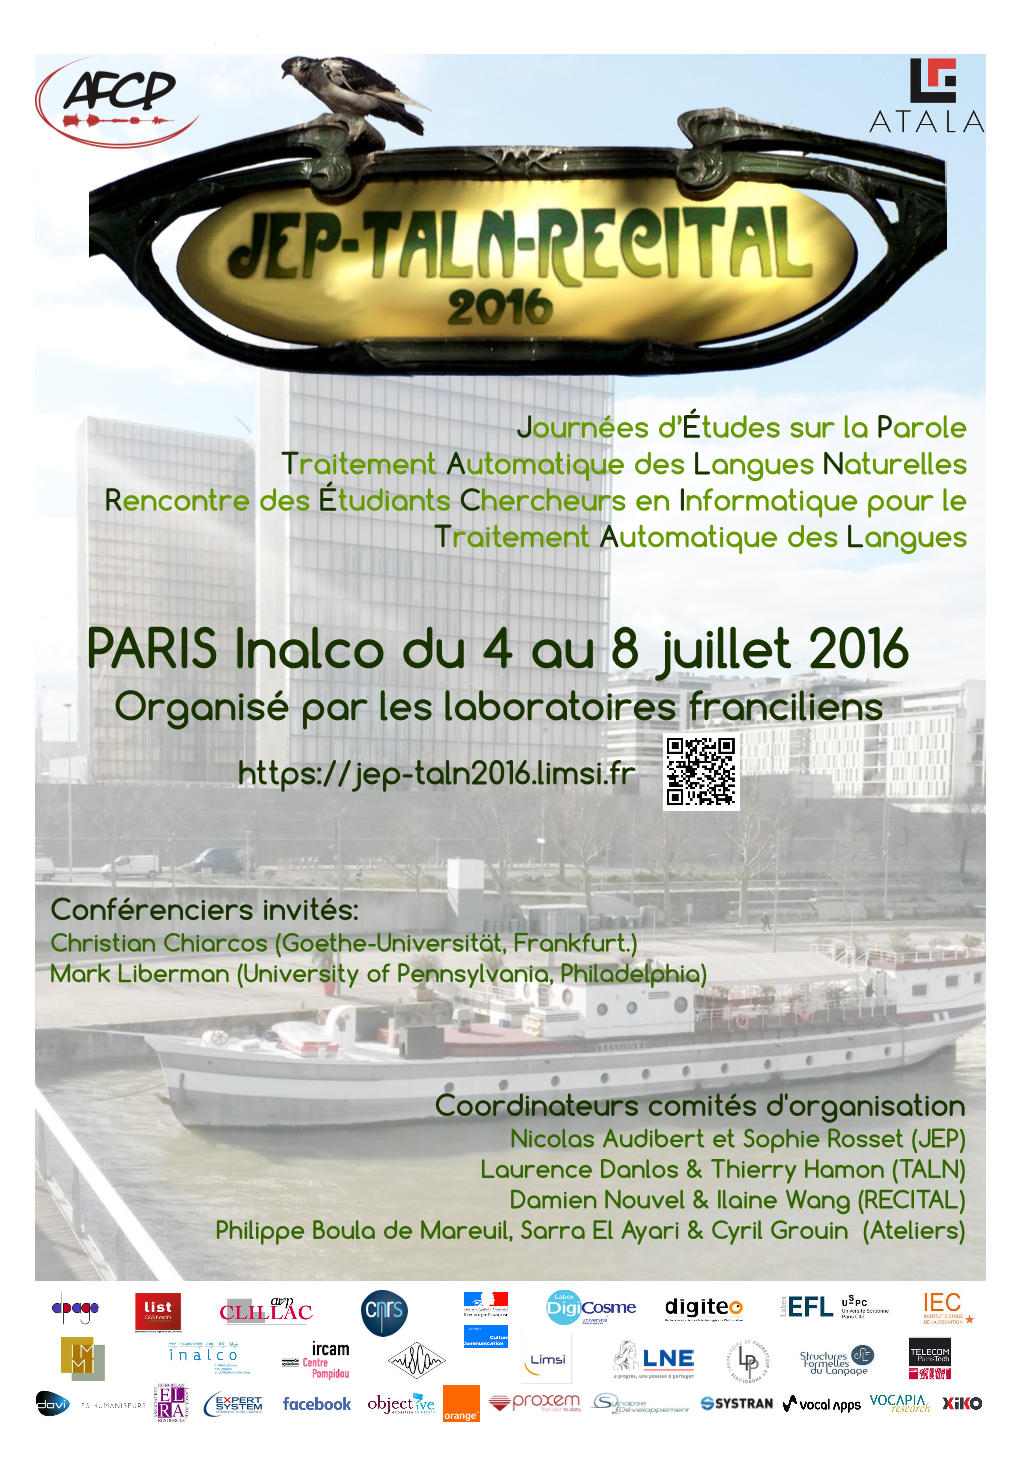 PARIS Inalco Du 4 Au 8 Juillet 2016 Organisé Par Les Laboratoires Franciliens